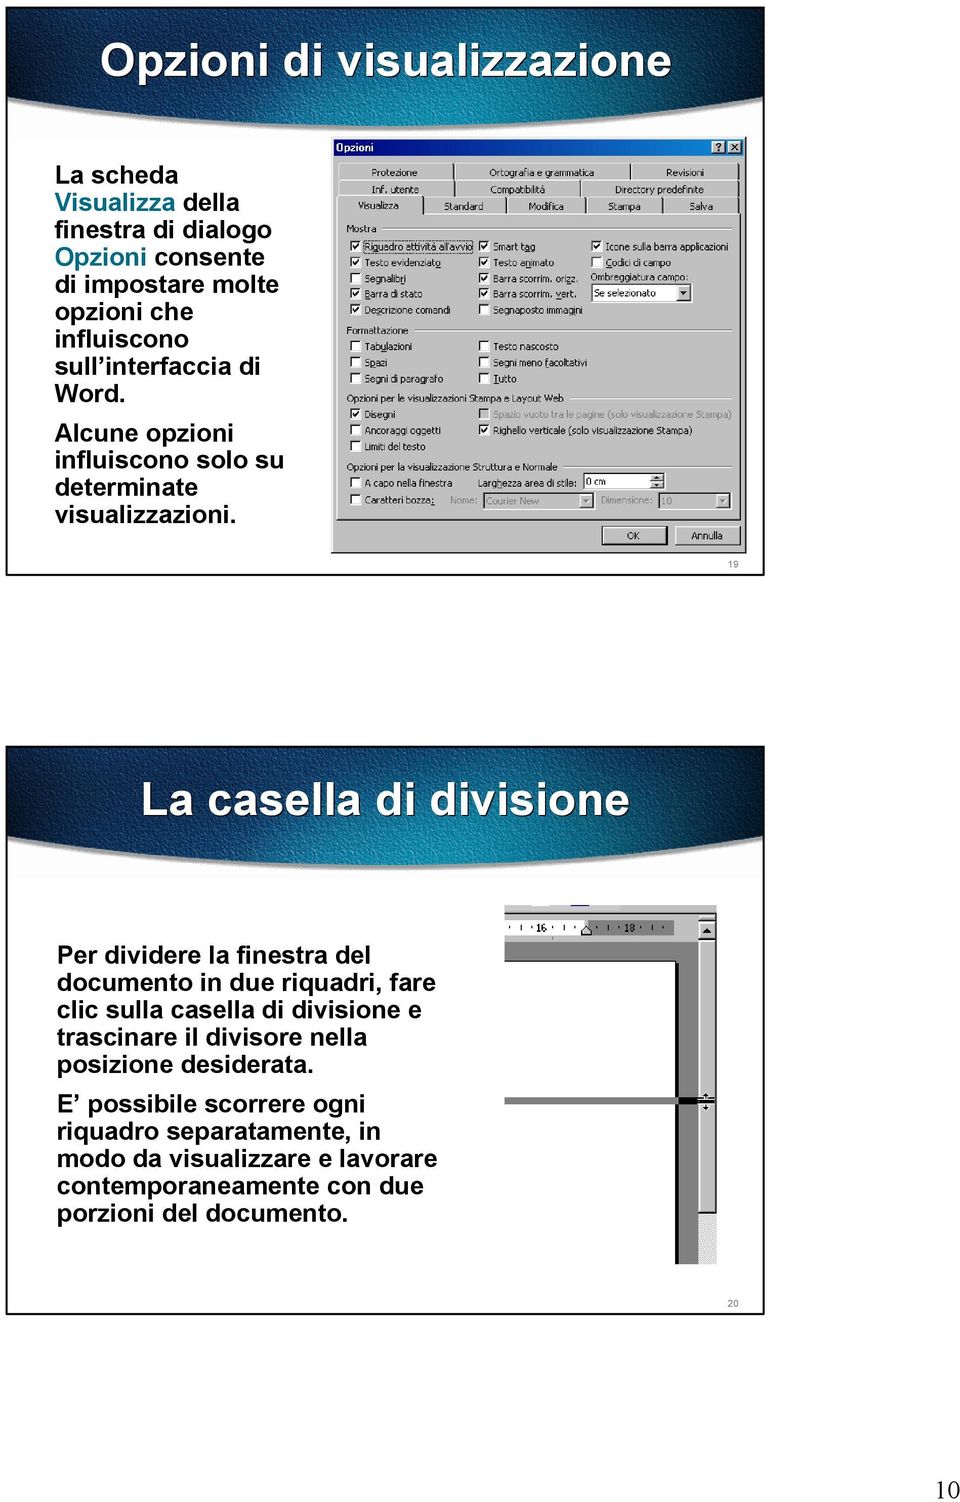 19 La casella di divisione Per dividere la finestra del documento in due riquadri, fare clic sulla casella di divisione e trascinare